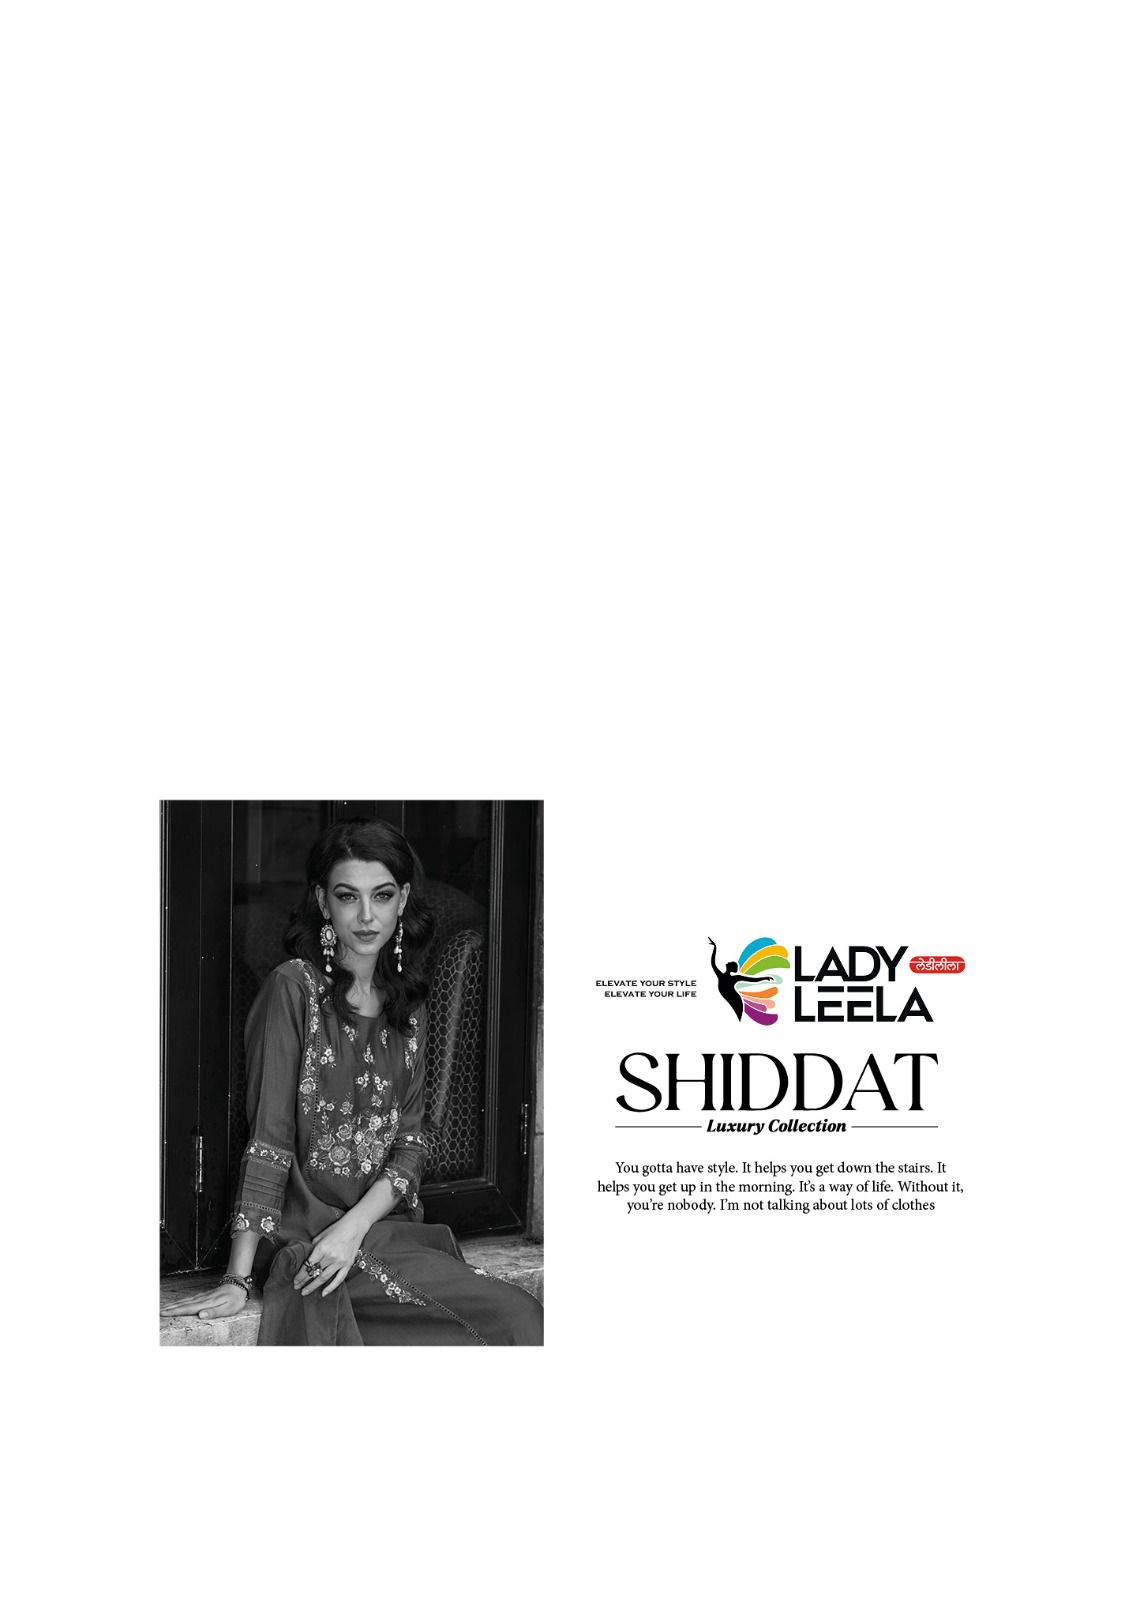 lady leela shiddat viscose regal look kurti pant with dupatta catalog